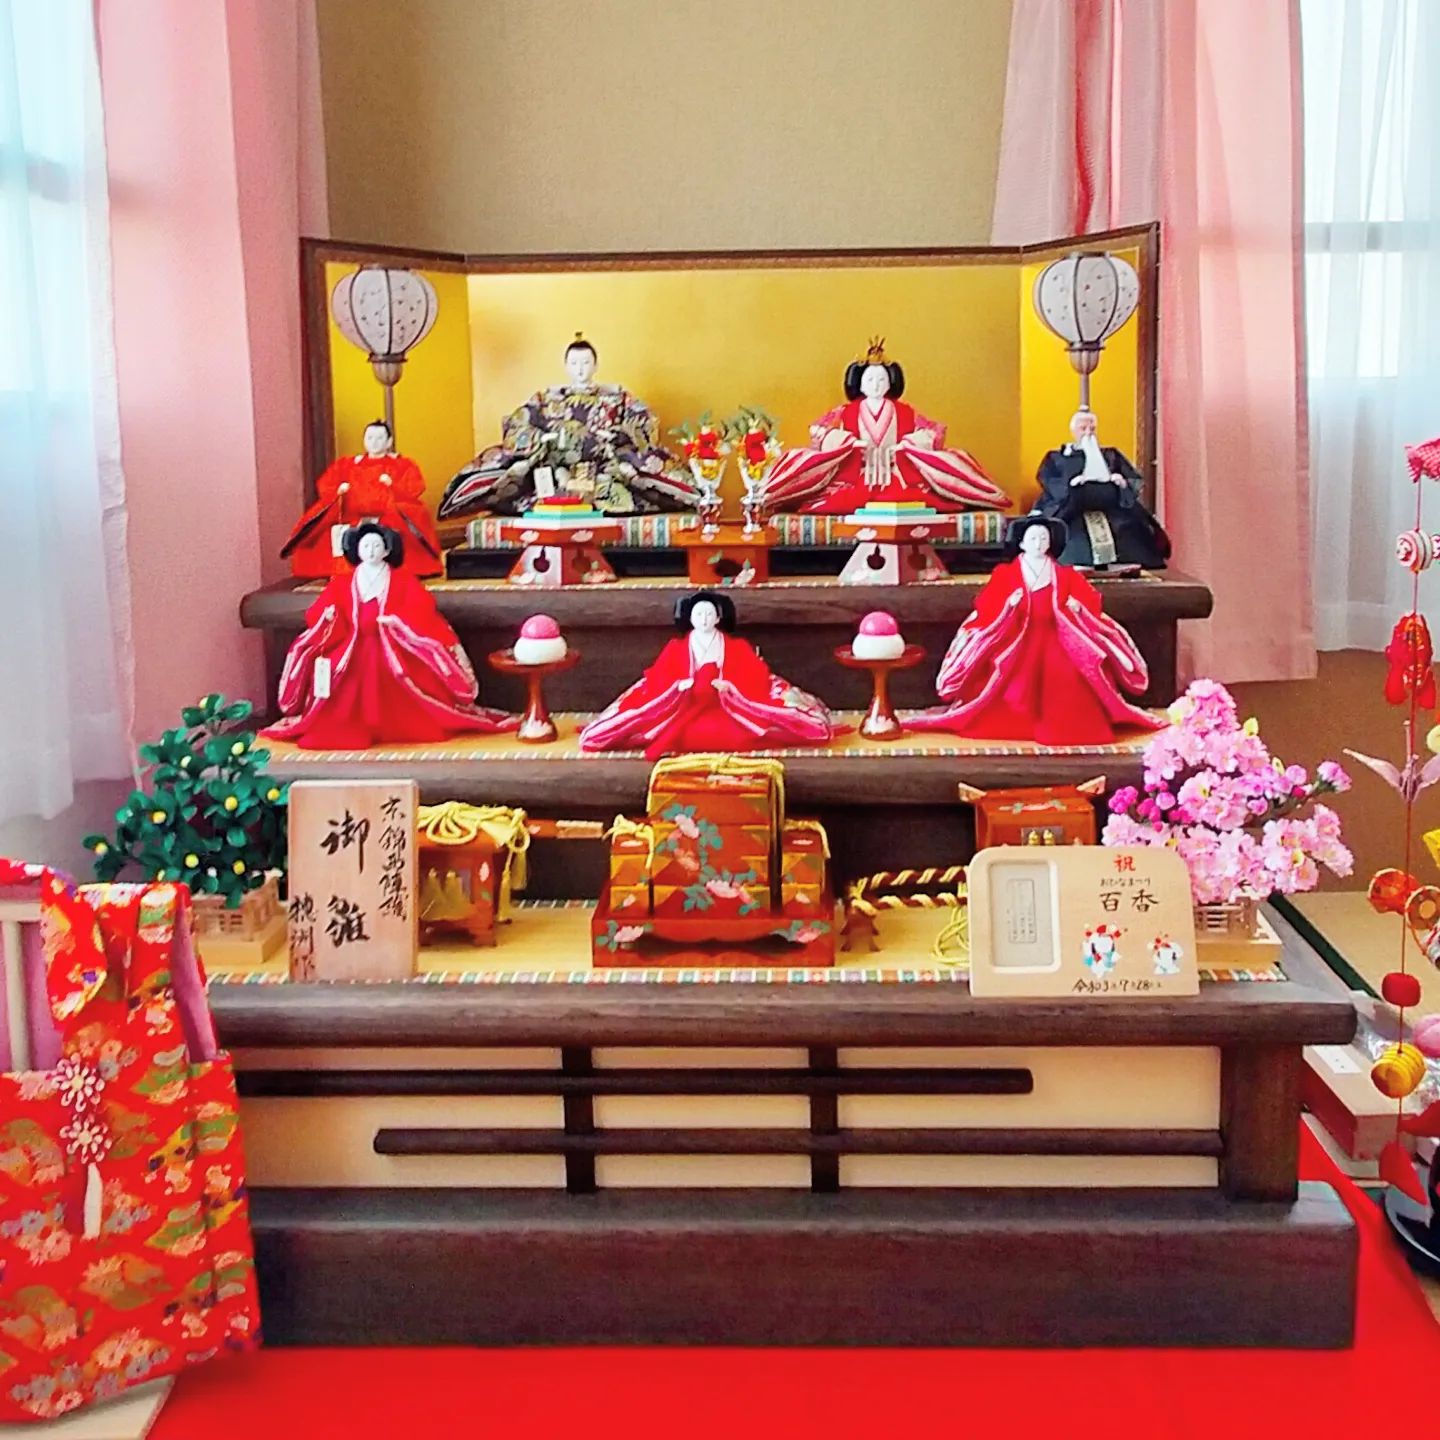 名古屋市のお客様宅に特注品の雛人形を配送、飾り付けいたしました。- from Instagram